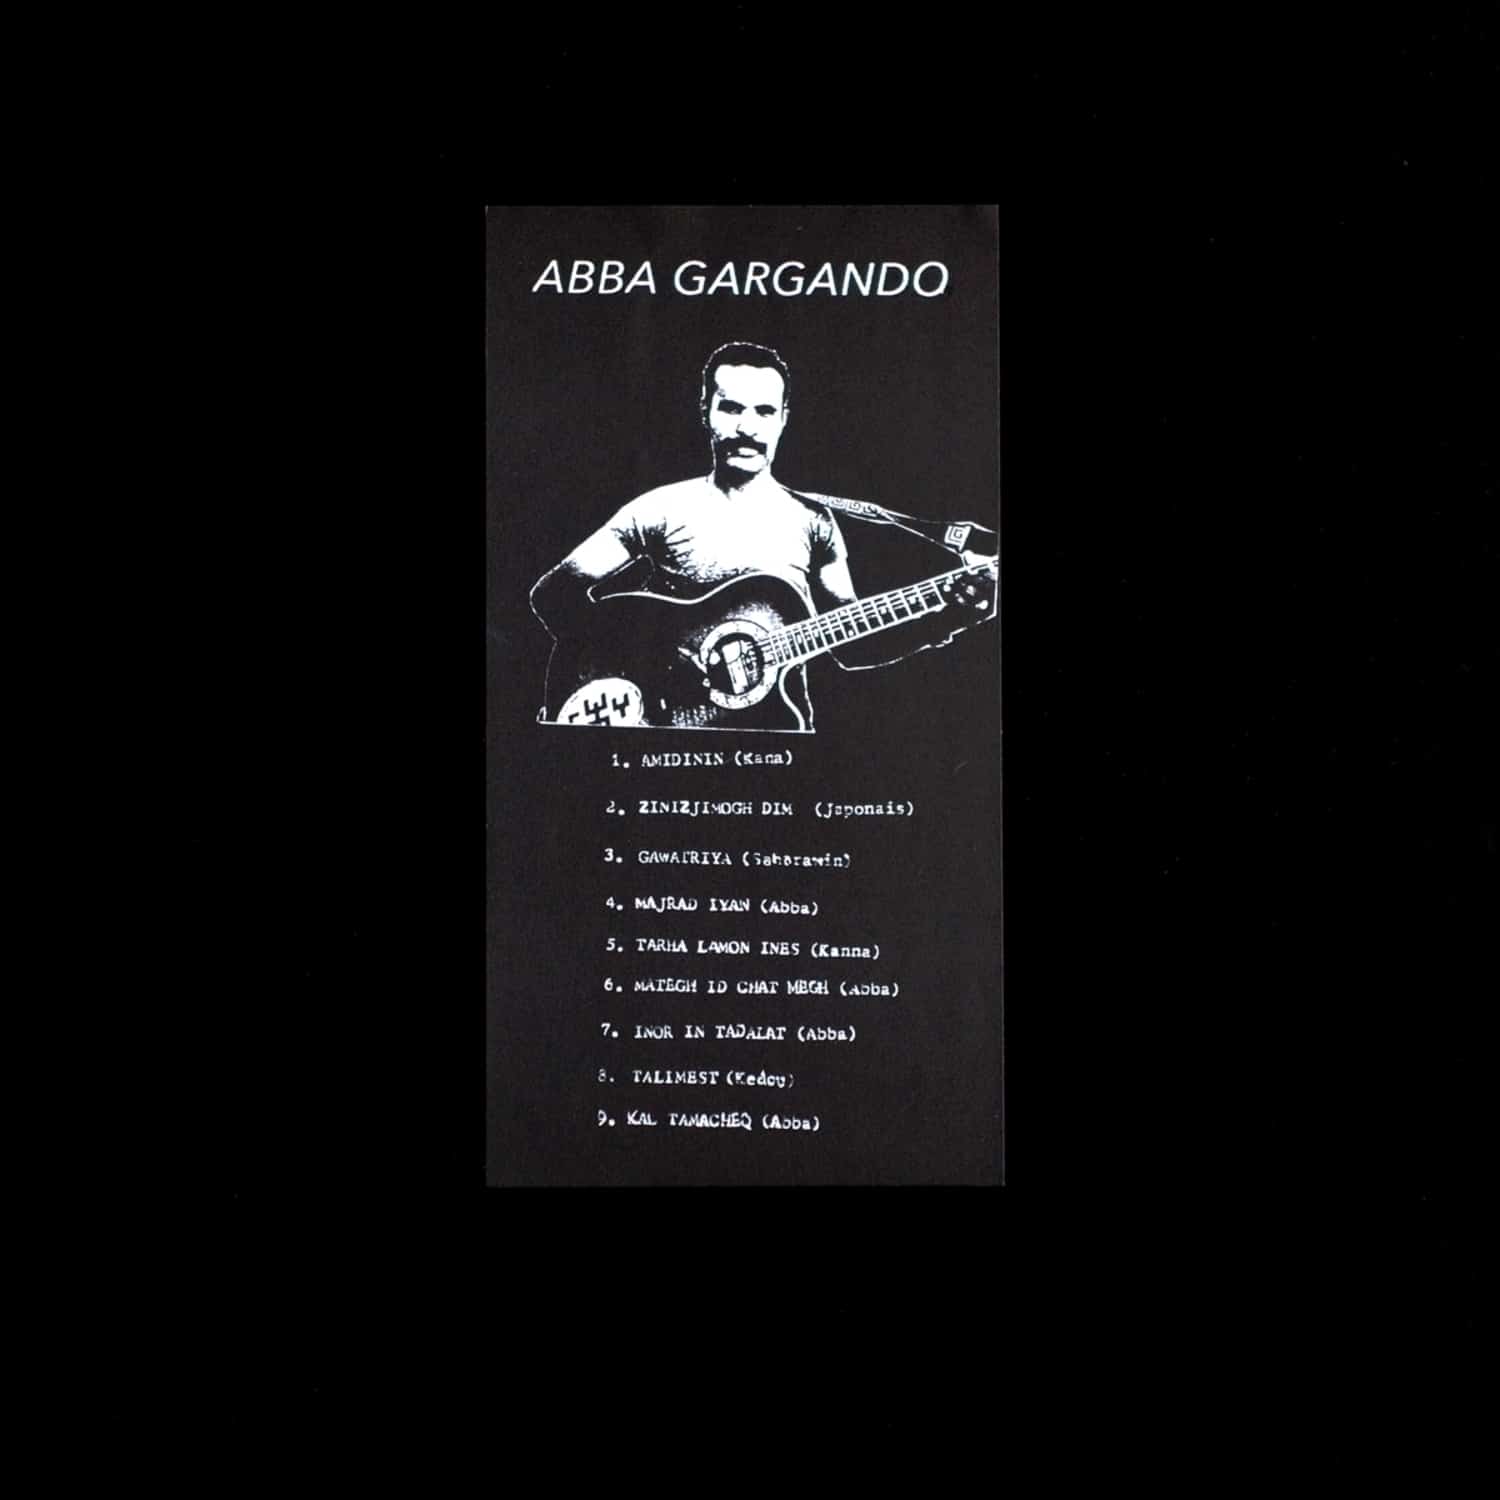 Abba Gargando - ABBA GARGANDO 